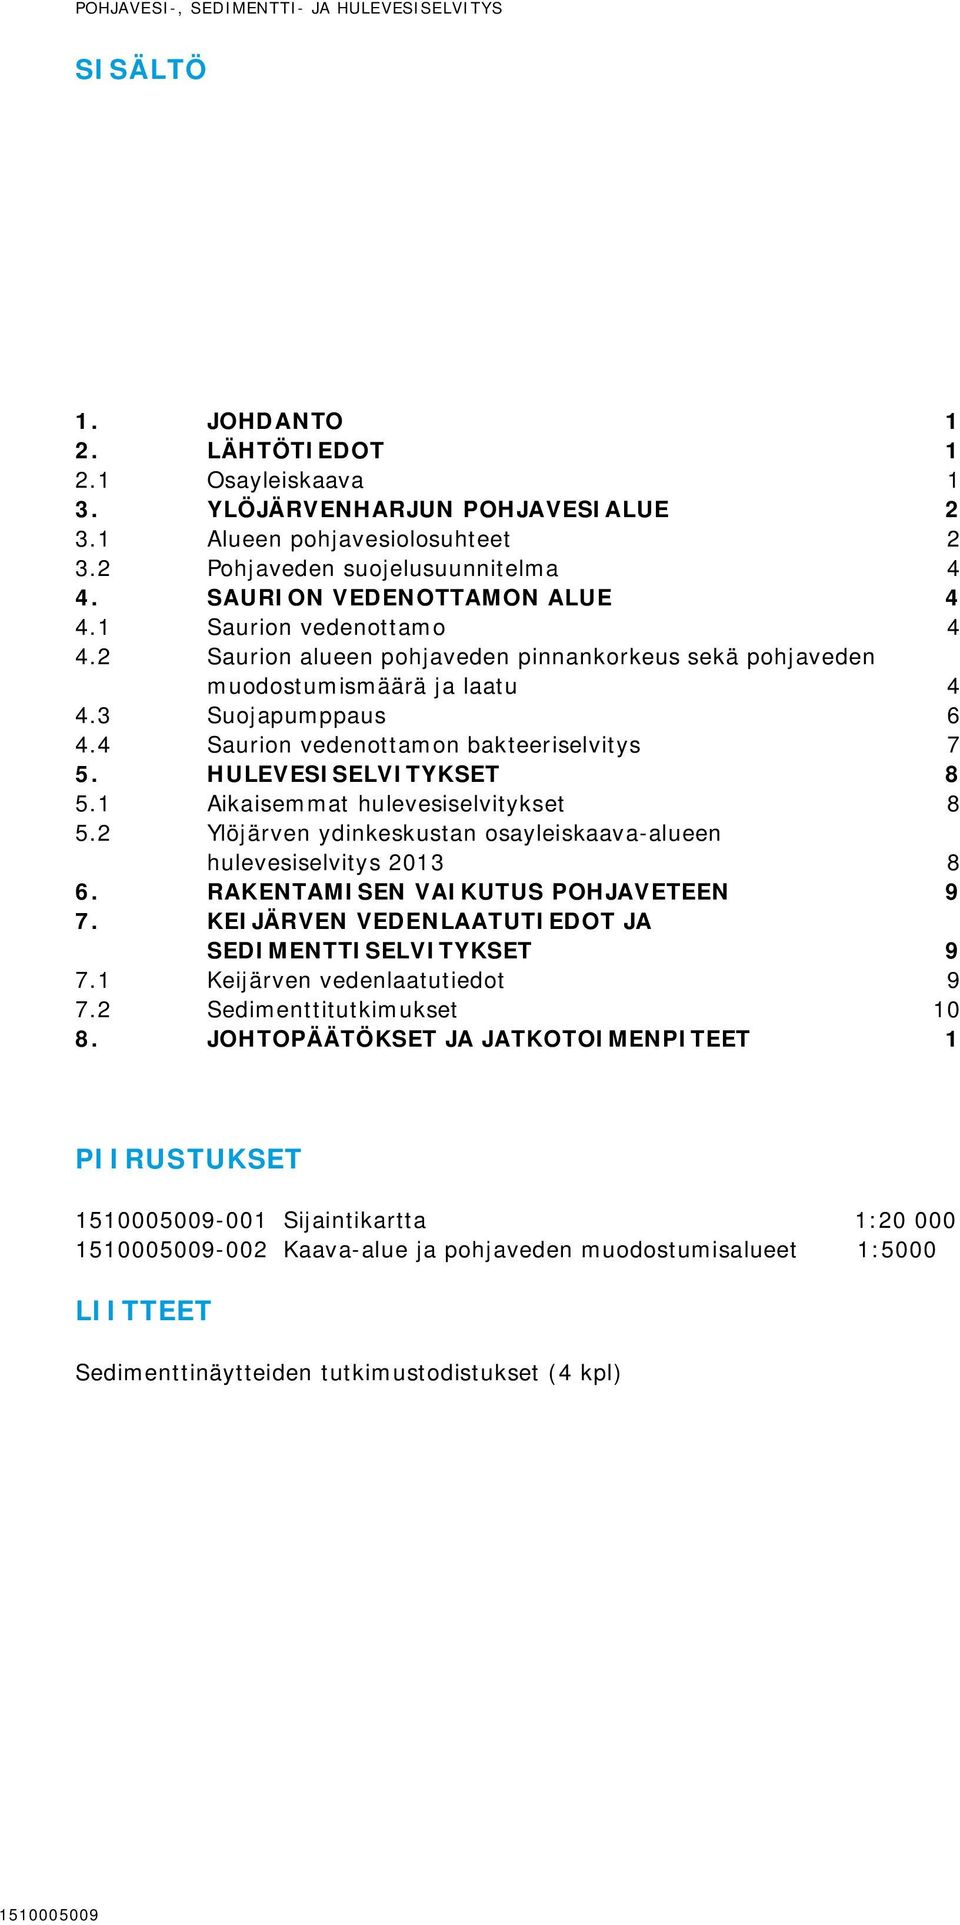 3 Suojapumppaus 6 4.4 Saurion vedenottamon bakteeriselvitys 7 5. HULEVESISELVITYKSET 8 5.1 Aikaisemmat hulevesiselvitykset 8 5.2 Ylöjärven ydinkeskustan osayleiskaava-alueen hulevesiselvitys 2013 8 6.